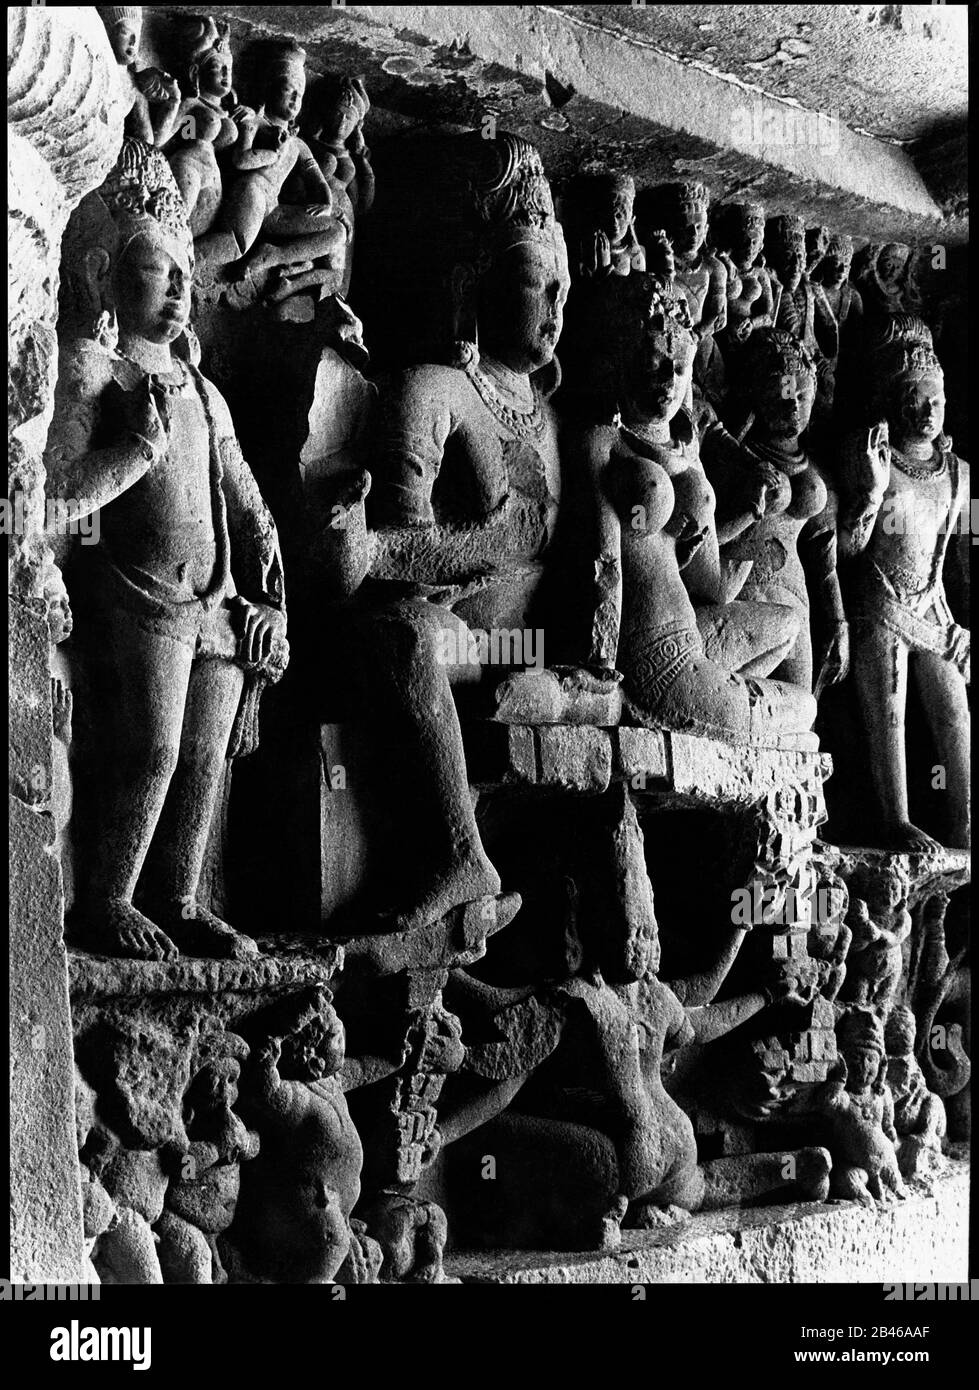 Shiva Parvati, cueva de Ellora, Patrimonio de la Humanidad de la UNESCO, Aurangabad, Maharashtra, India, Asia, 1977, antiguo cuadro vintage de 1900 Foto de stock